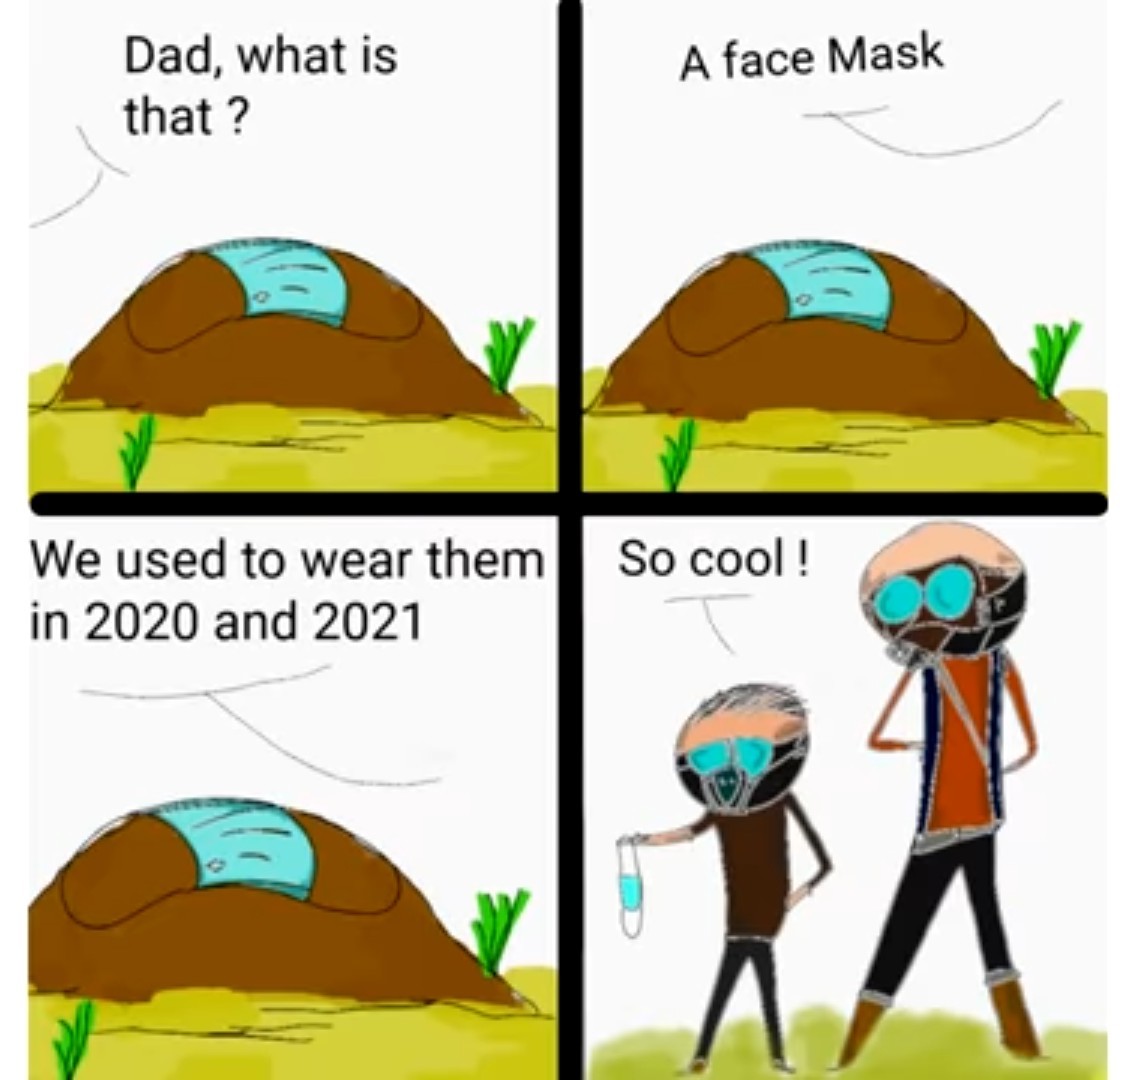 Masks - meme